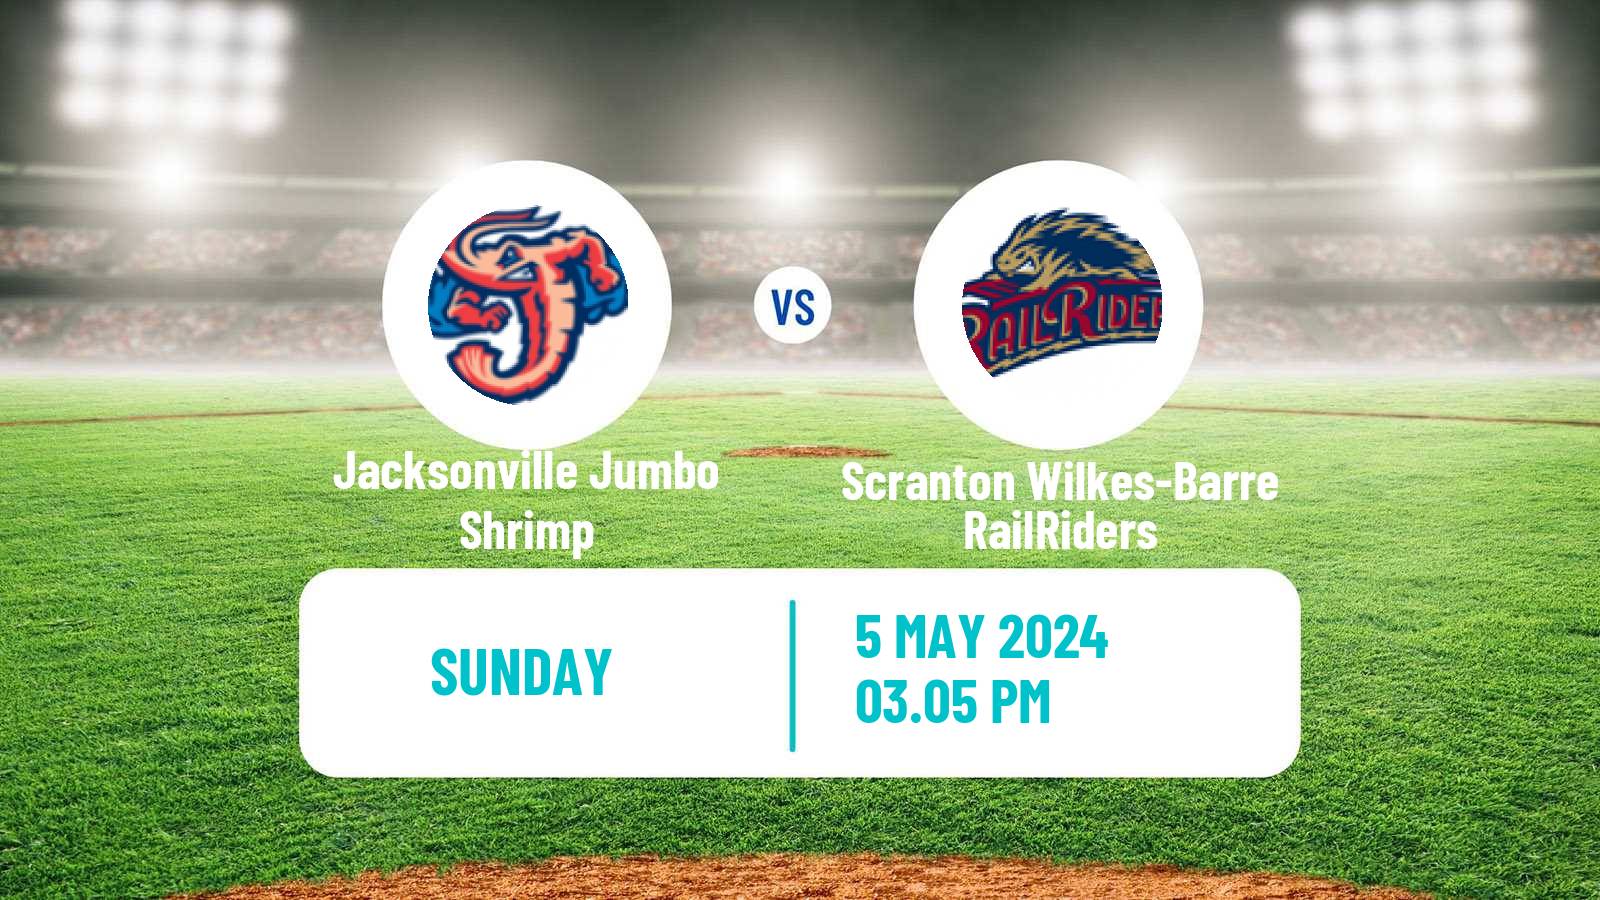 Baseball IL Jacksonville Jumbo Shrimp - Scranton Wilkes-Barre RailRiders